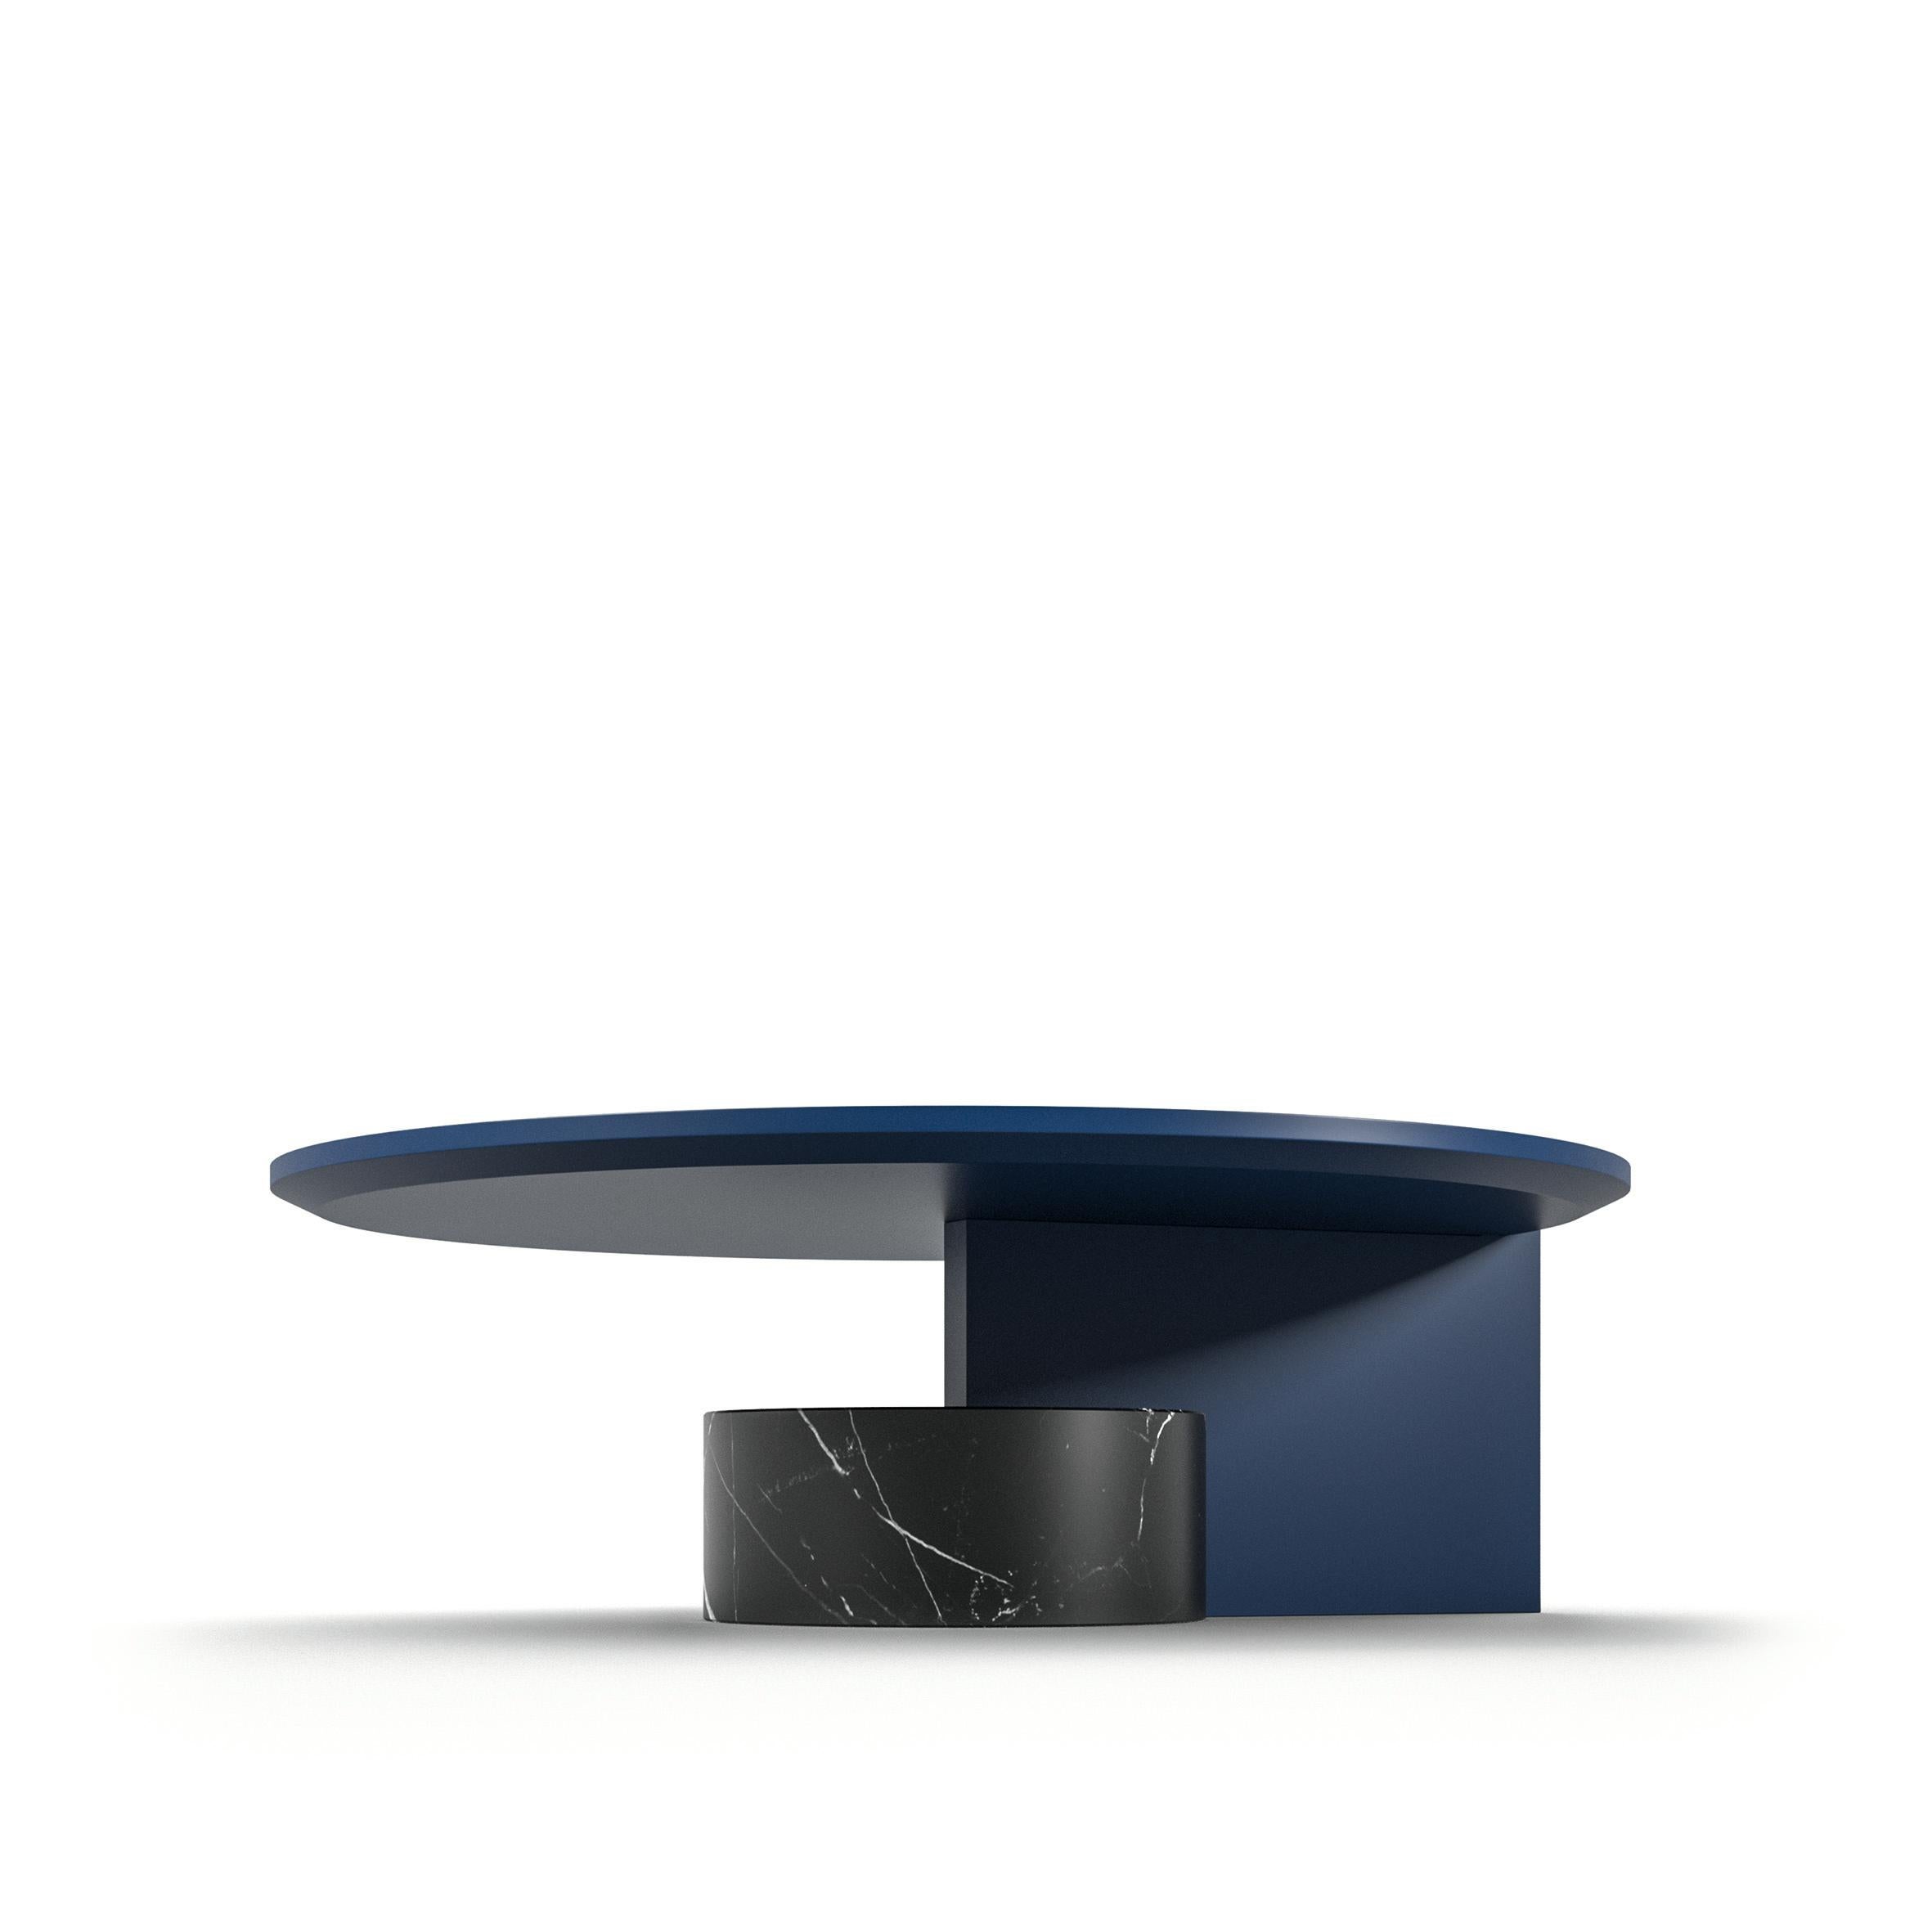 Table basse Sengu conçue par Patricia Urquiola.
Fabriqué par Cassina (Italie).

DESIGN/ONE TABLES BASSES
Une collection de trois tables basses design de Patricia Urquiola en combinaison avec le canapé éponyme, elles sont la réponse à tout besoin